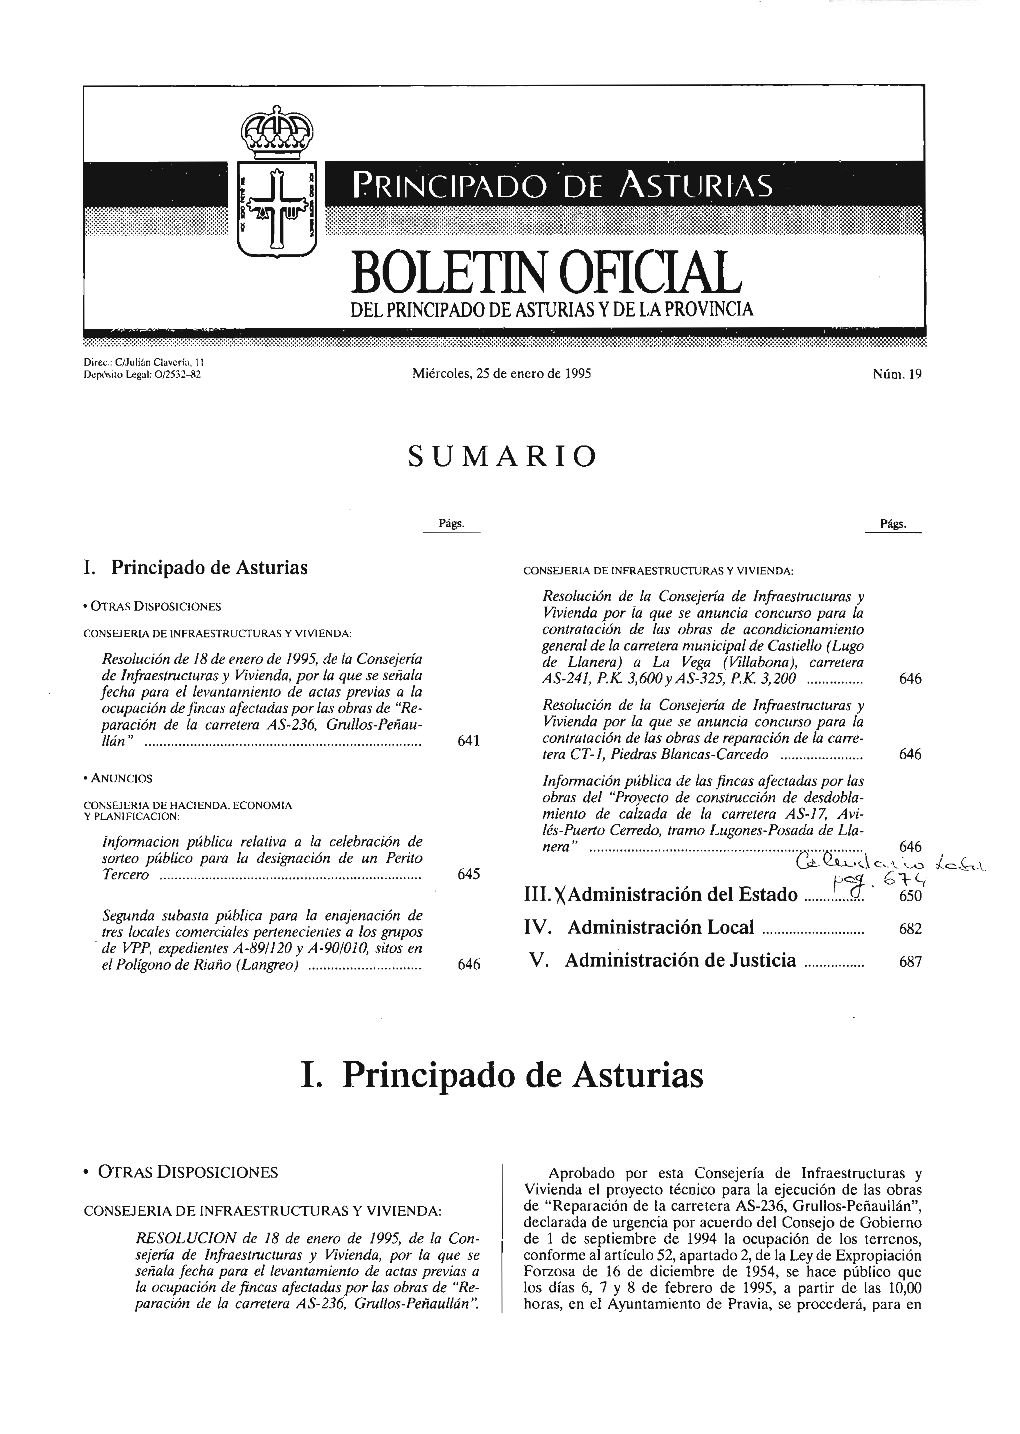 Boletin Ohc1al Delprincipado De Asturias Yde Laprovincia